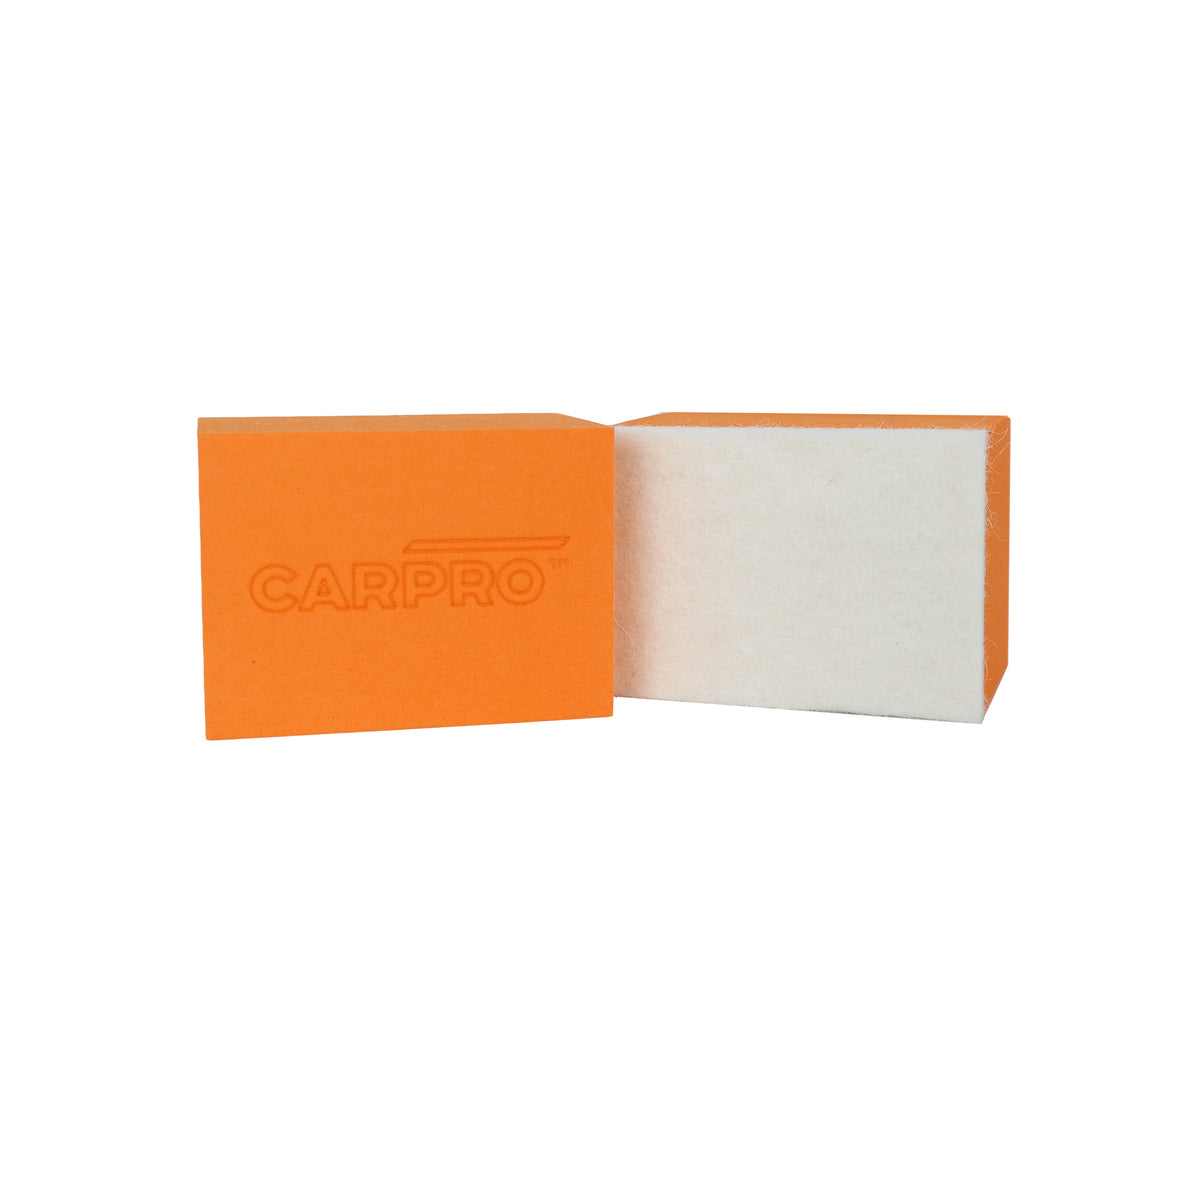  Applicatore in spugna arancione CARPRO con lato bianco in feltro, ideale per l'applicazione uniforme del composto lucidante CeriGlass sui vetri dell'auto.